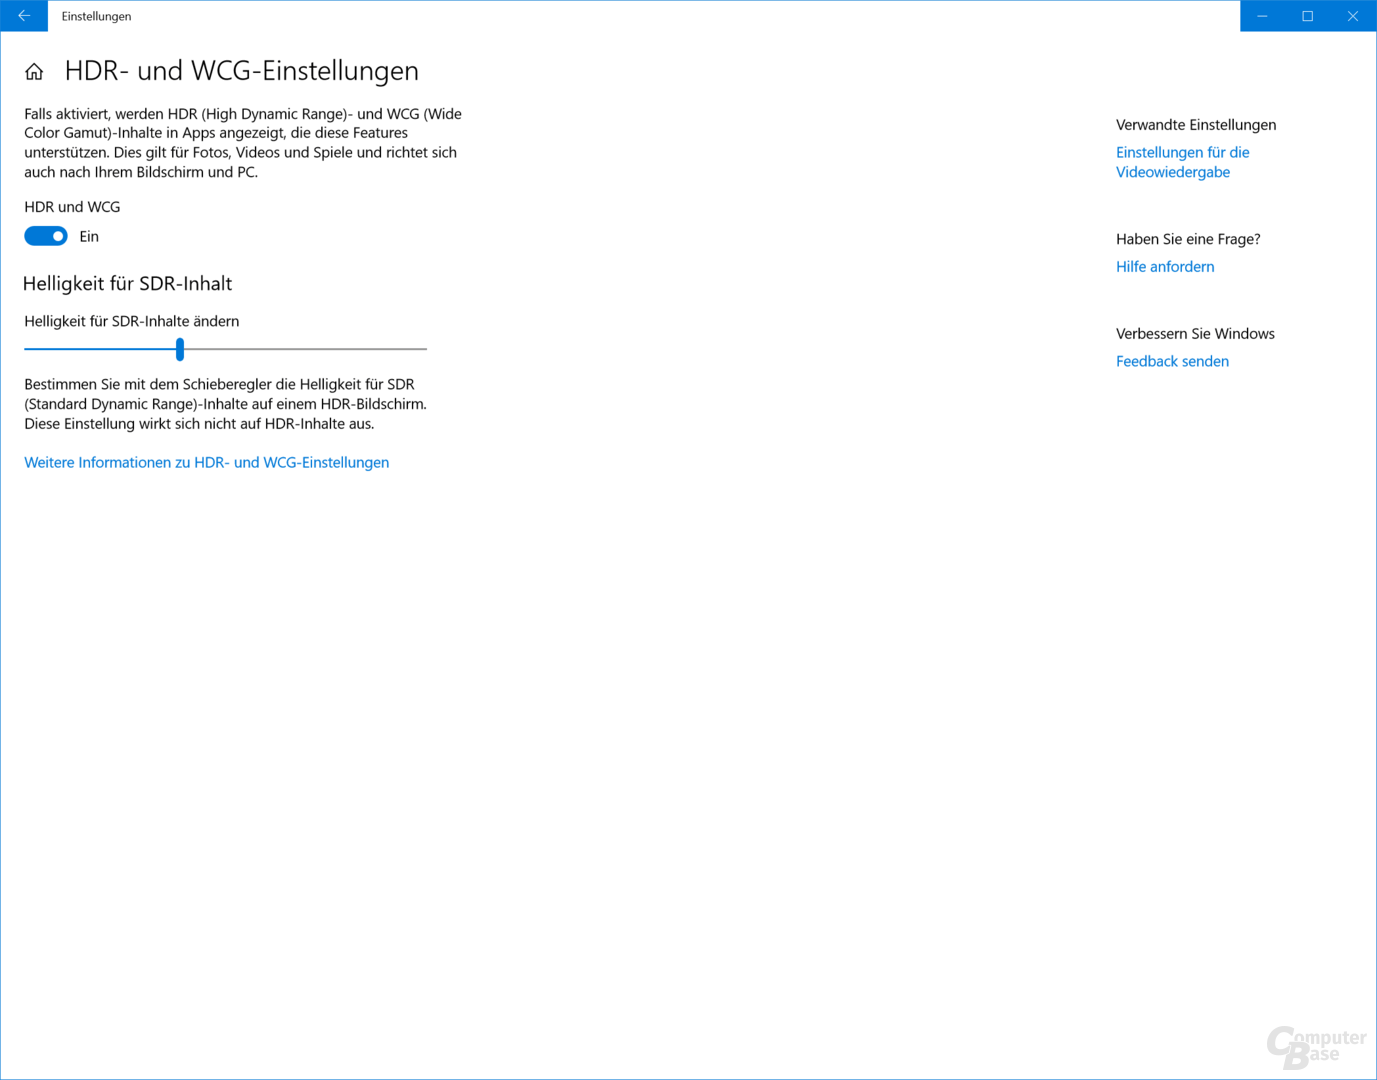 HDR-Einstellungen in Windows 10